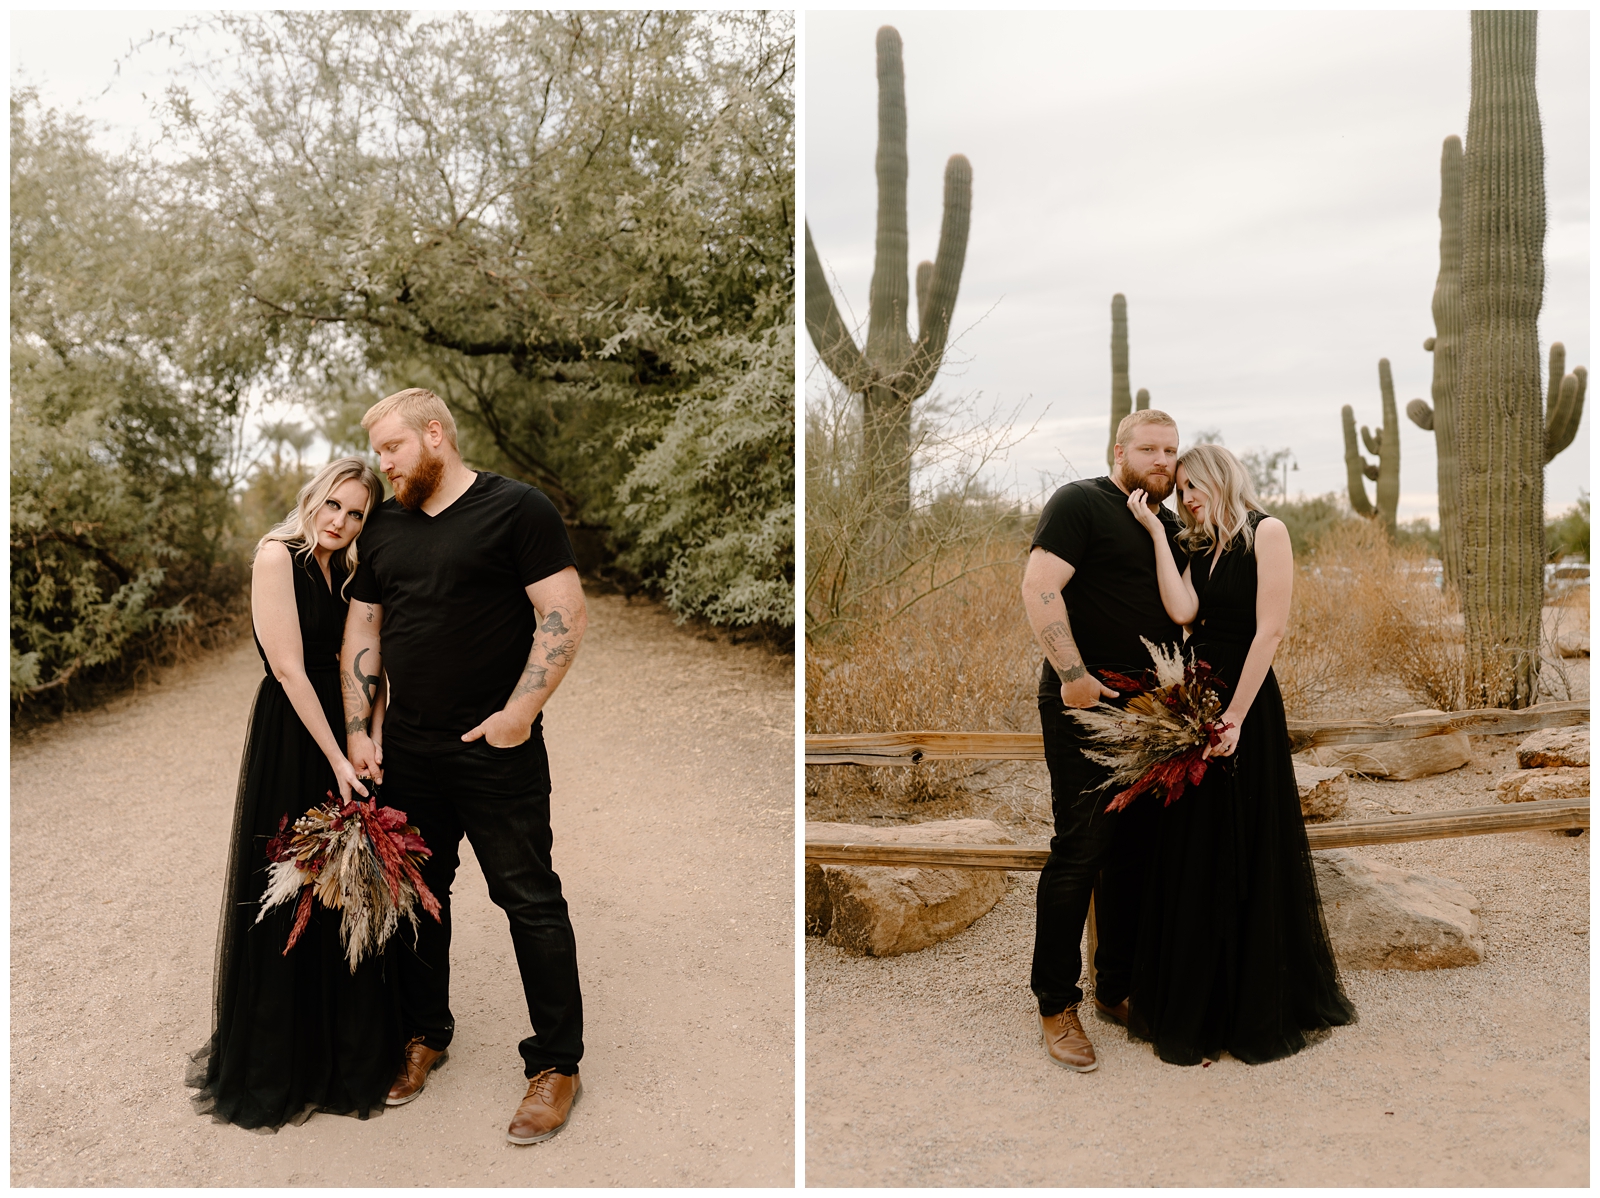 Desert elopement on Halloween by Phoenix, AZ photographer